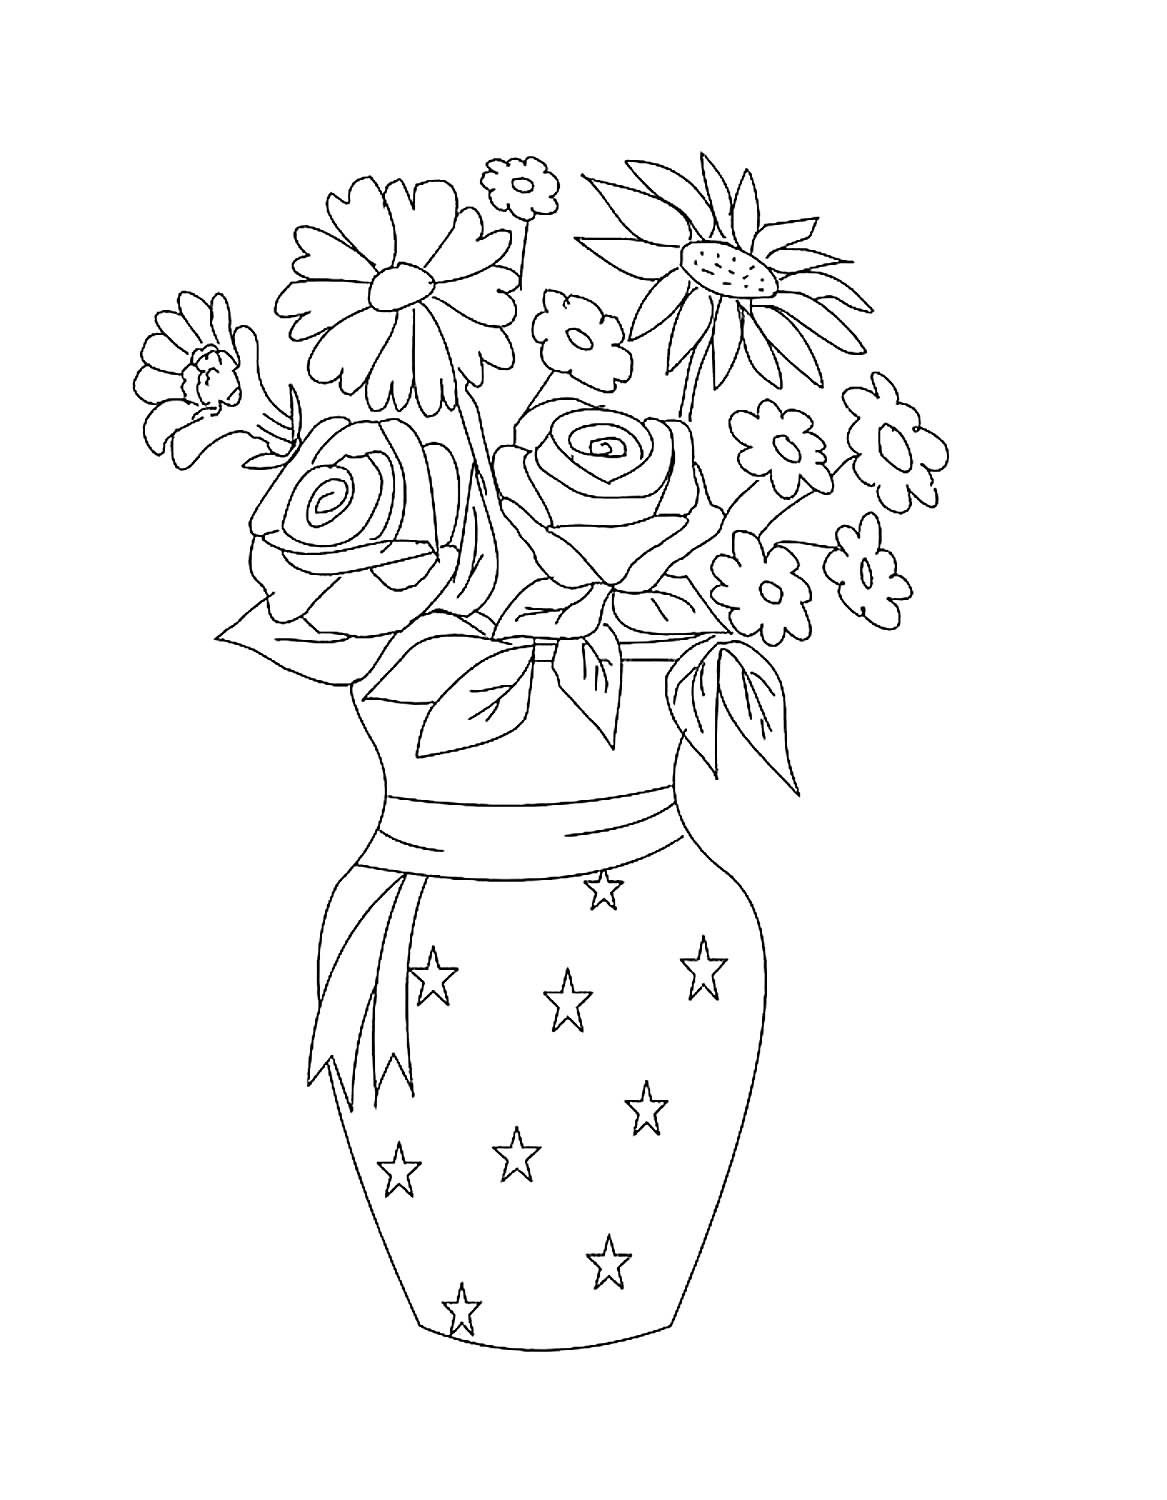 Раскраска ваза с цветами скачать, распечатать или рисовать онлайн